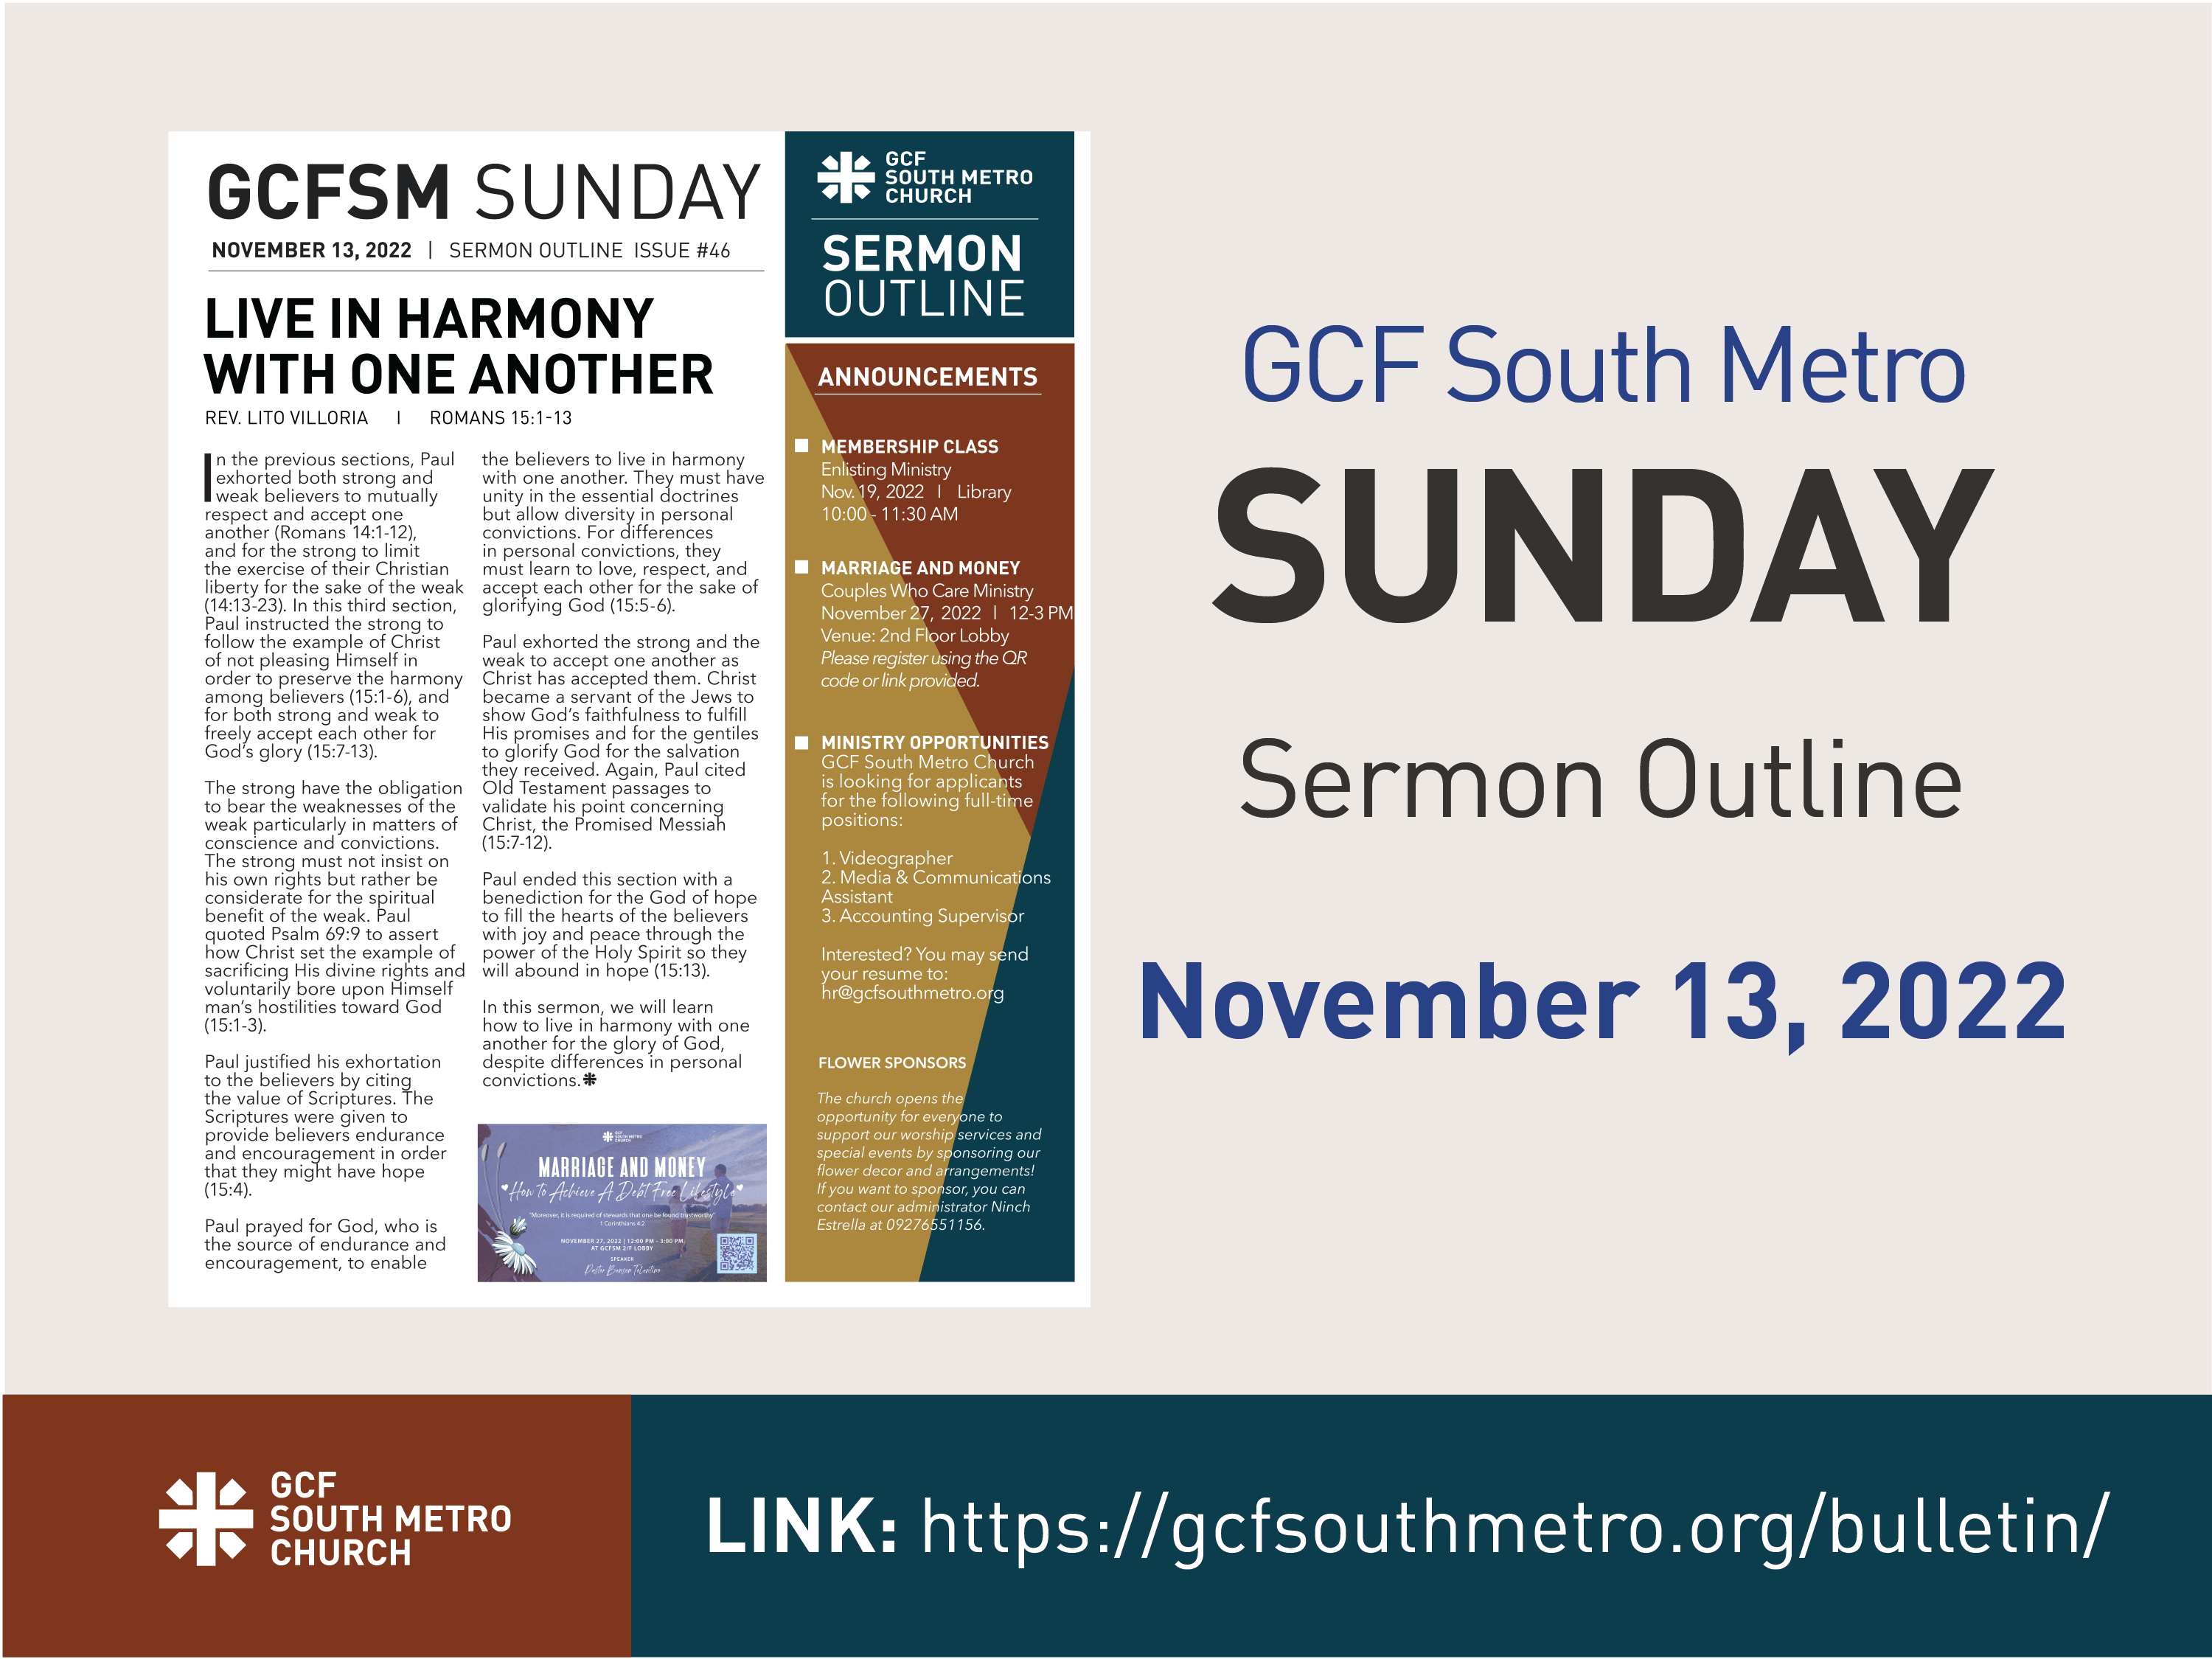 Sunday Bulletin – Sermon Outline, November 13, 2022